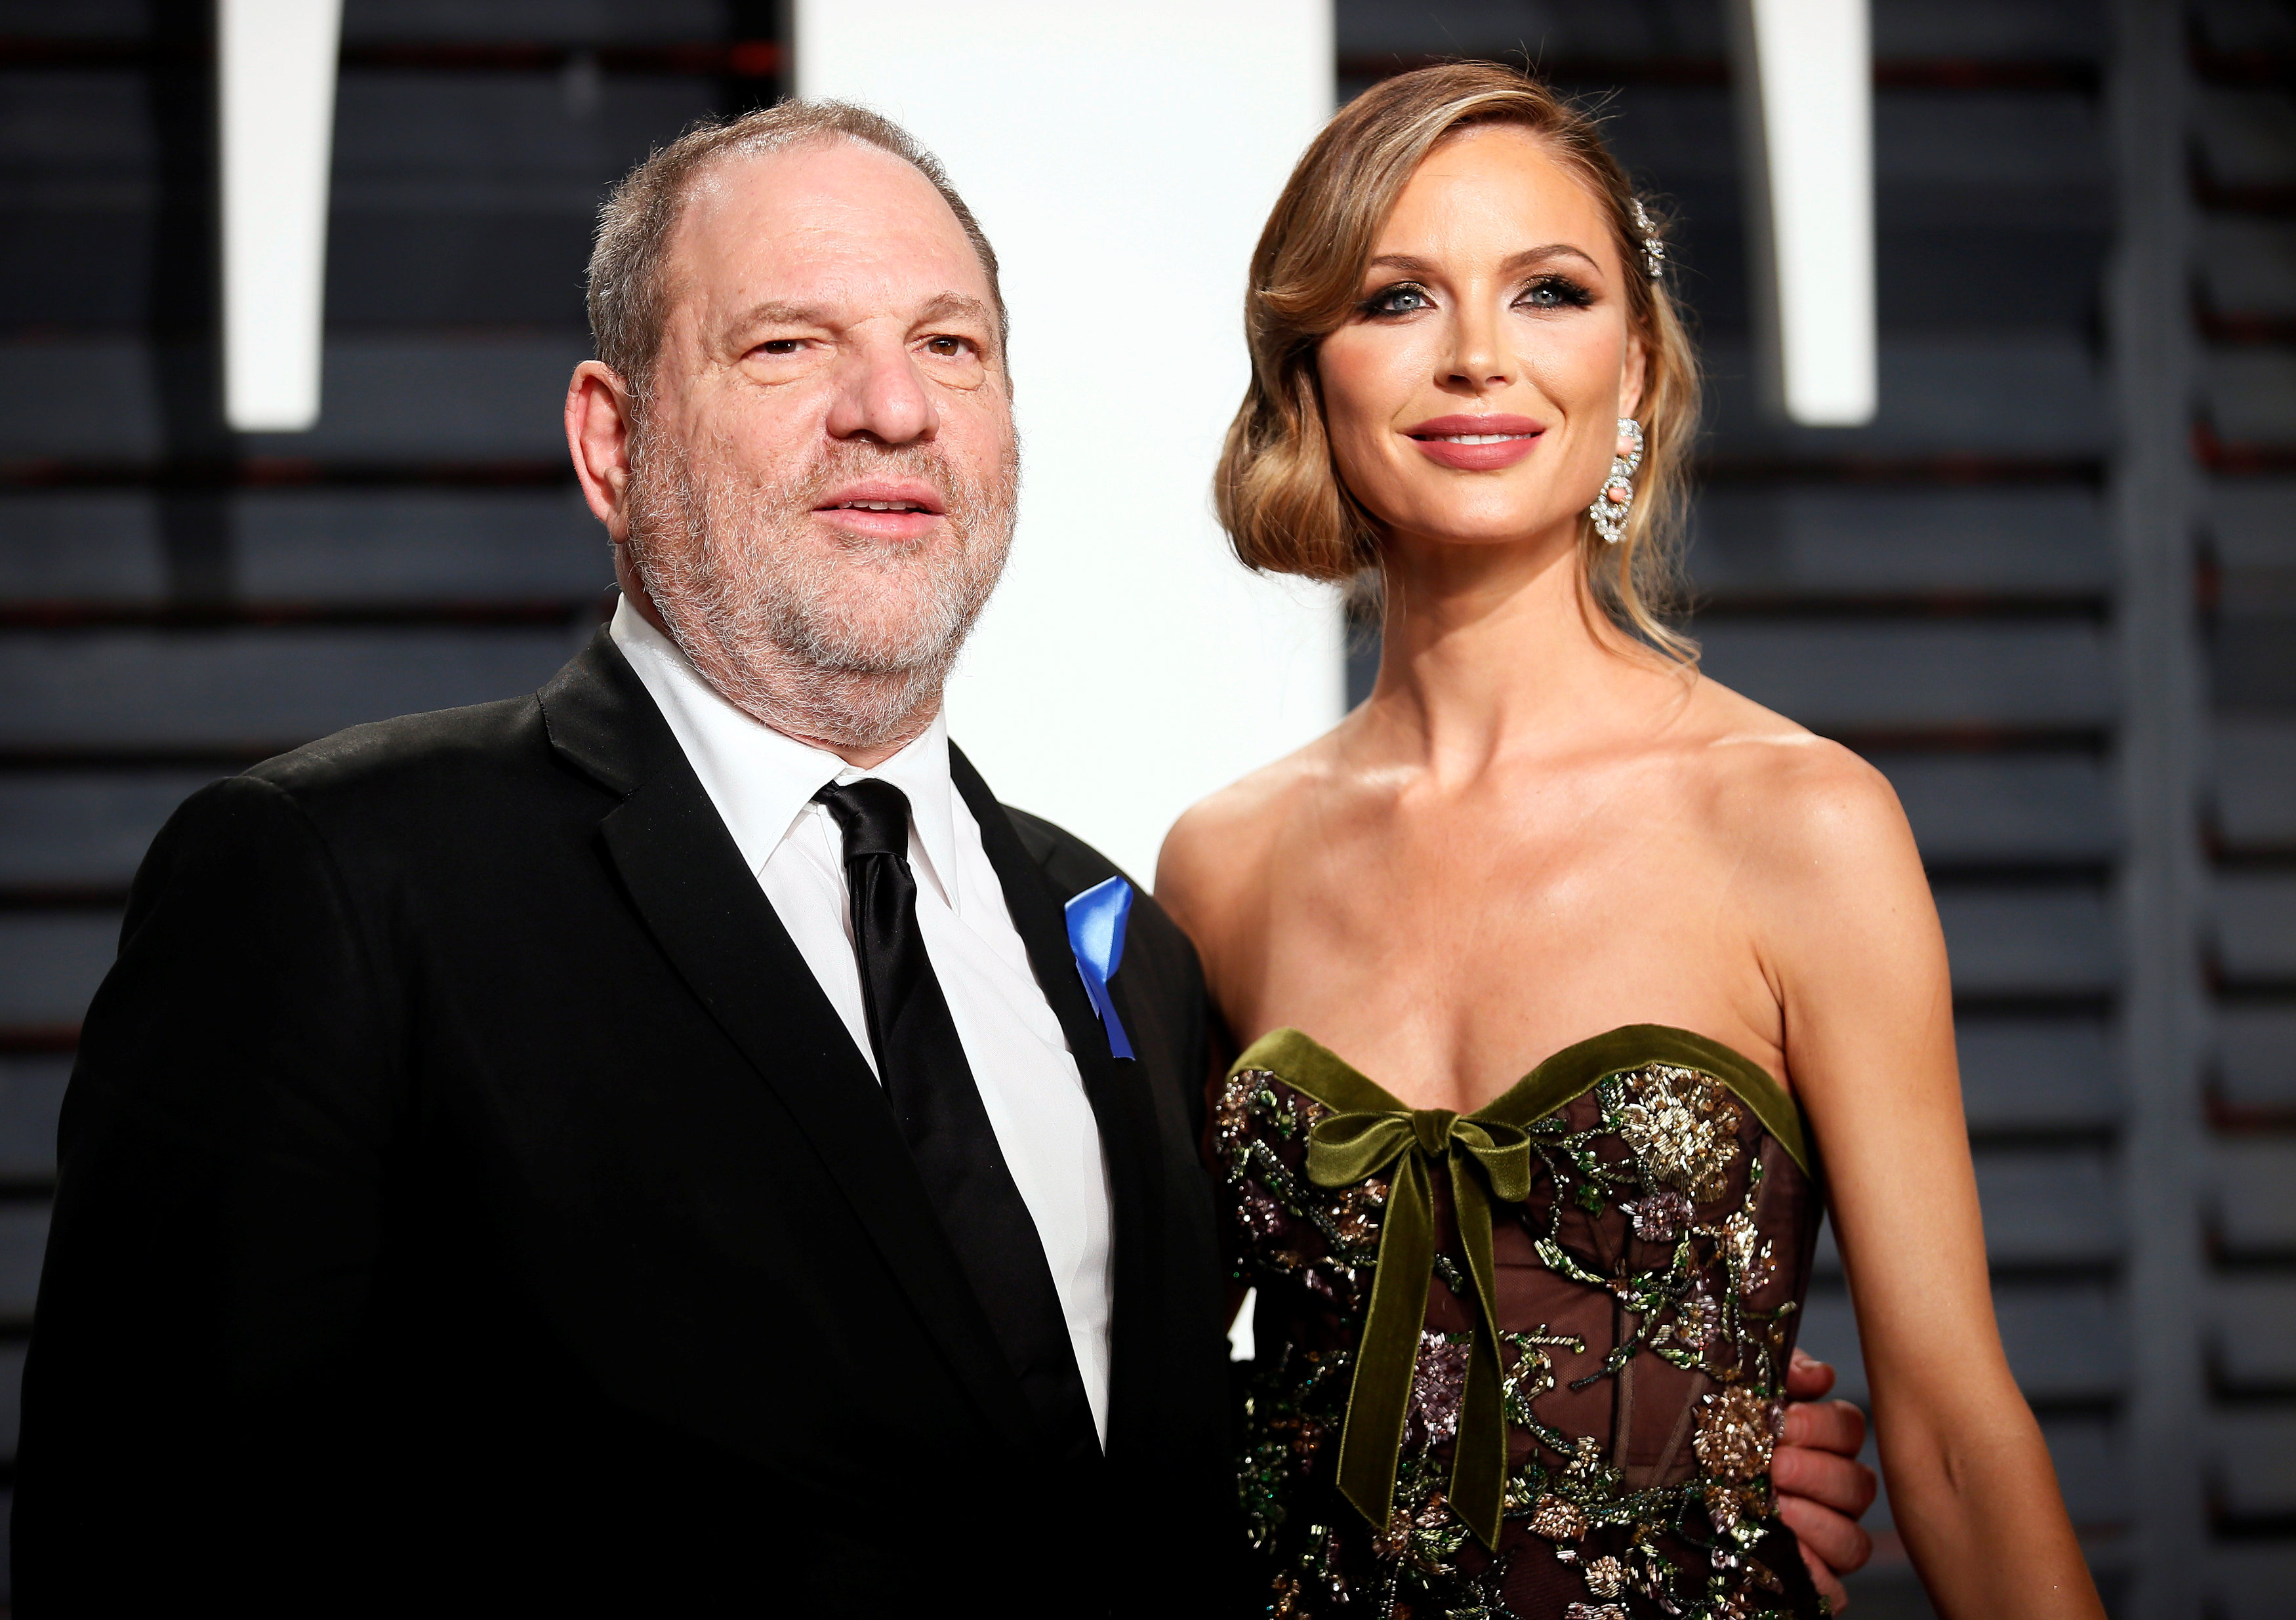 Piden boicot a la firma de lujo Marchesa por escándalos sexuales de Harvey Weinstein